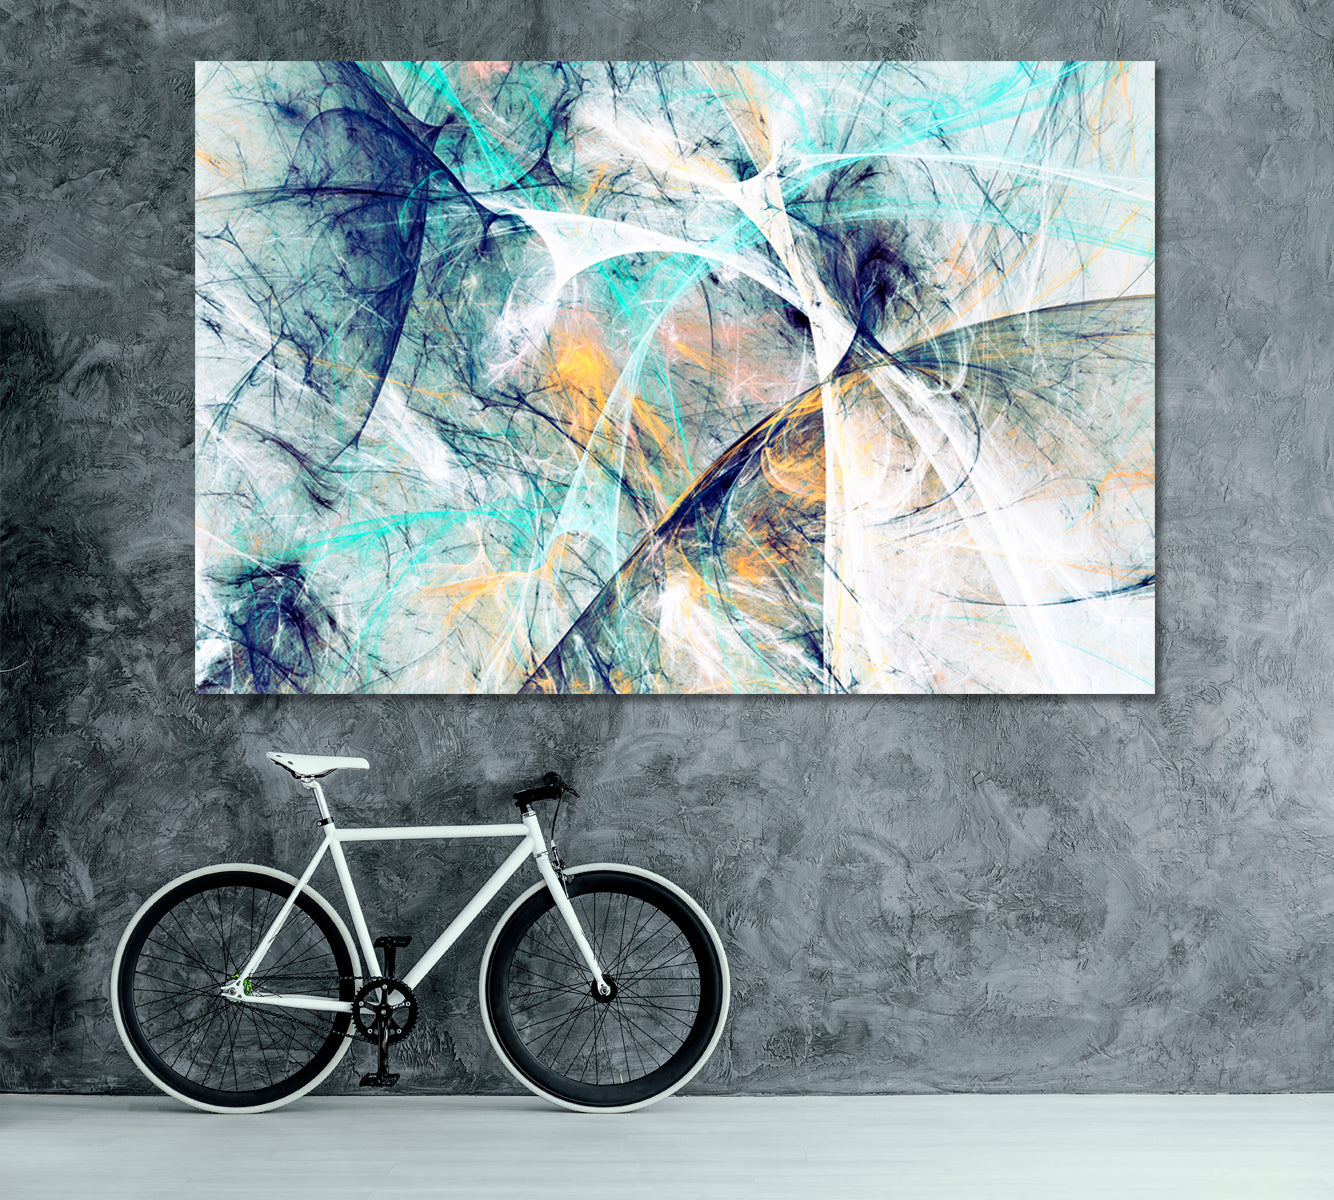 Modern Futuristic Cold Color Graphic Design Canvas Print ArtLexy 1 Panel 24"x16" inches 